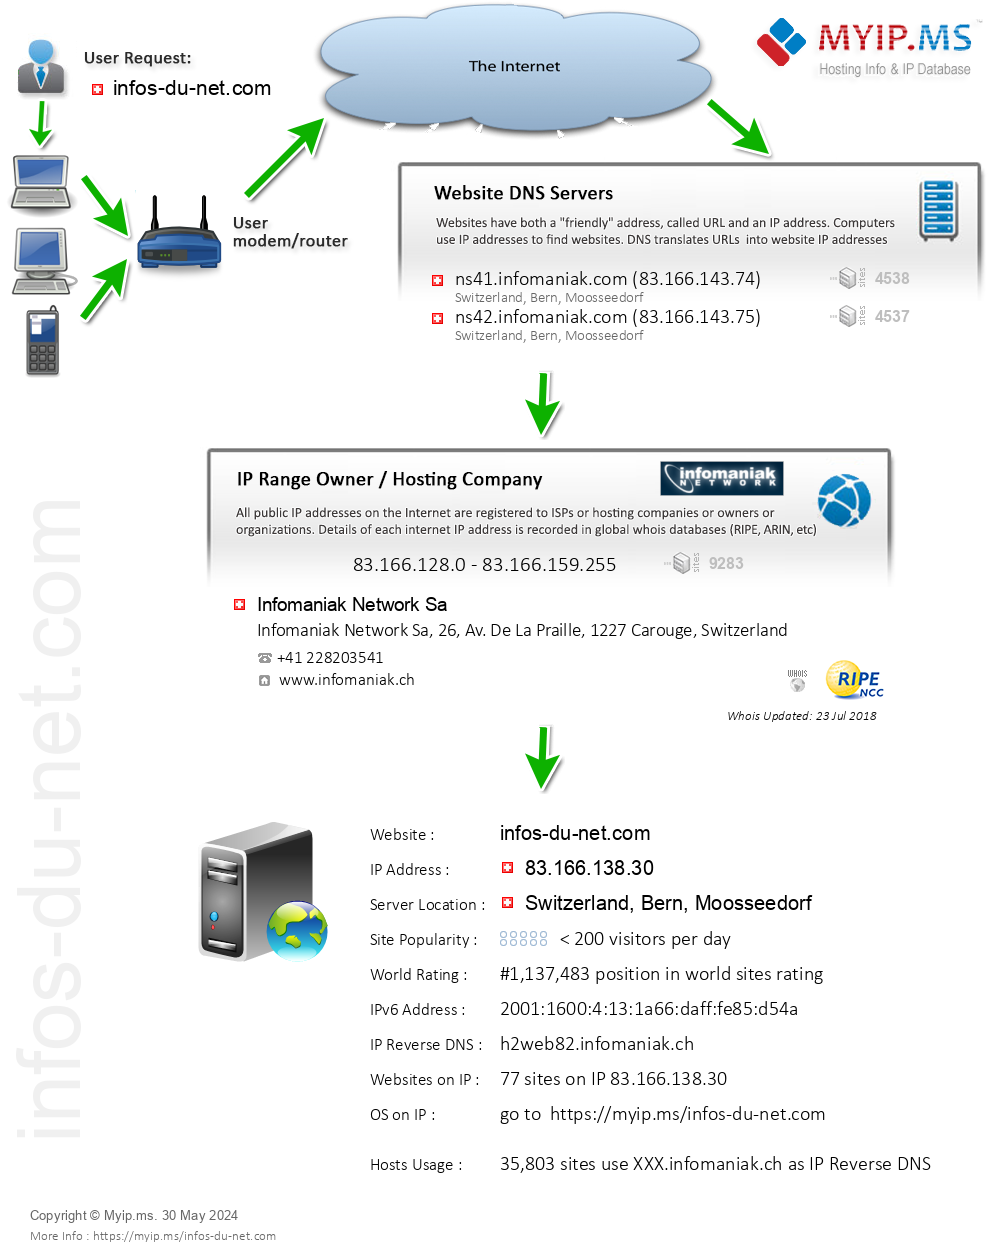 Infos-du-net.com - Website Hosting Visual IP Diagram